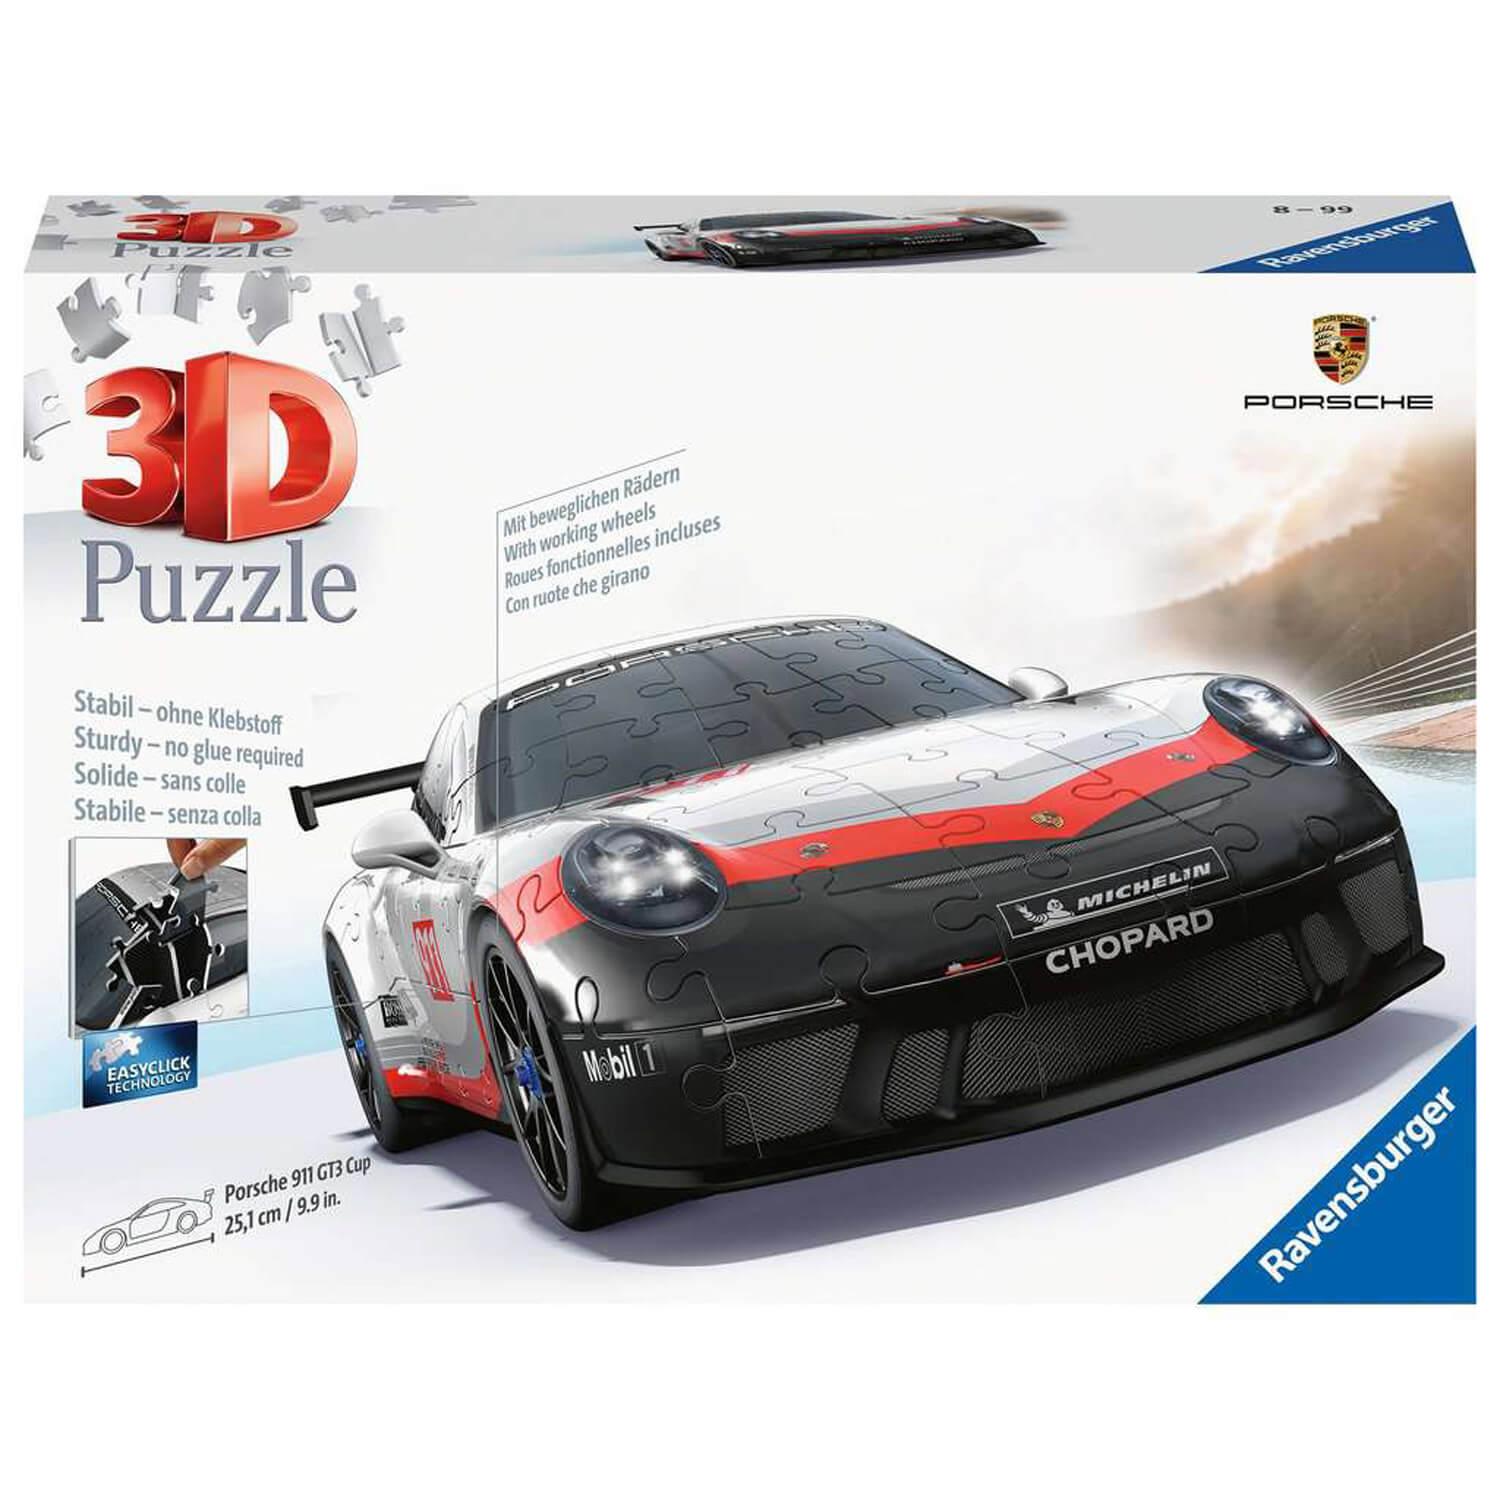 3D puzzle 108 pieces Porsche 911 GT3 Cup (with grid) - Ravensburger - Puzzle  Boulevard